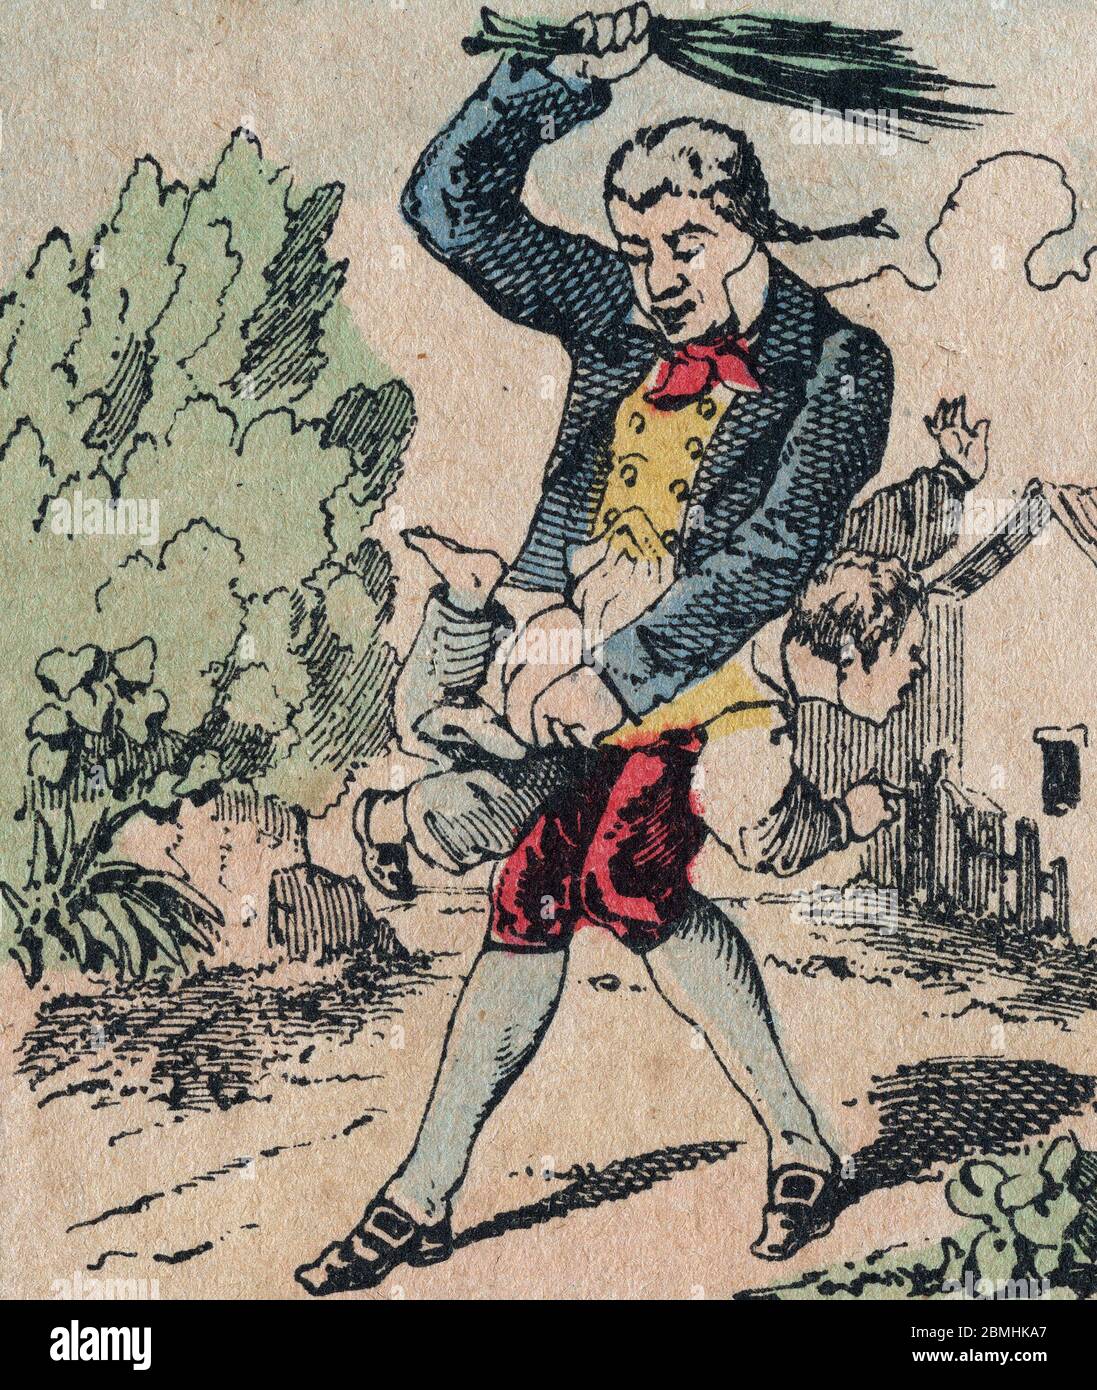 Le pere fouettard, personnage Legendaire du Folklore, punissant les enfants pas sages avec son fouet, leur donnant la fessee, image d'Epinal, 19eme si Stockfoto